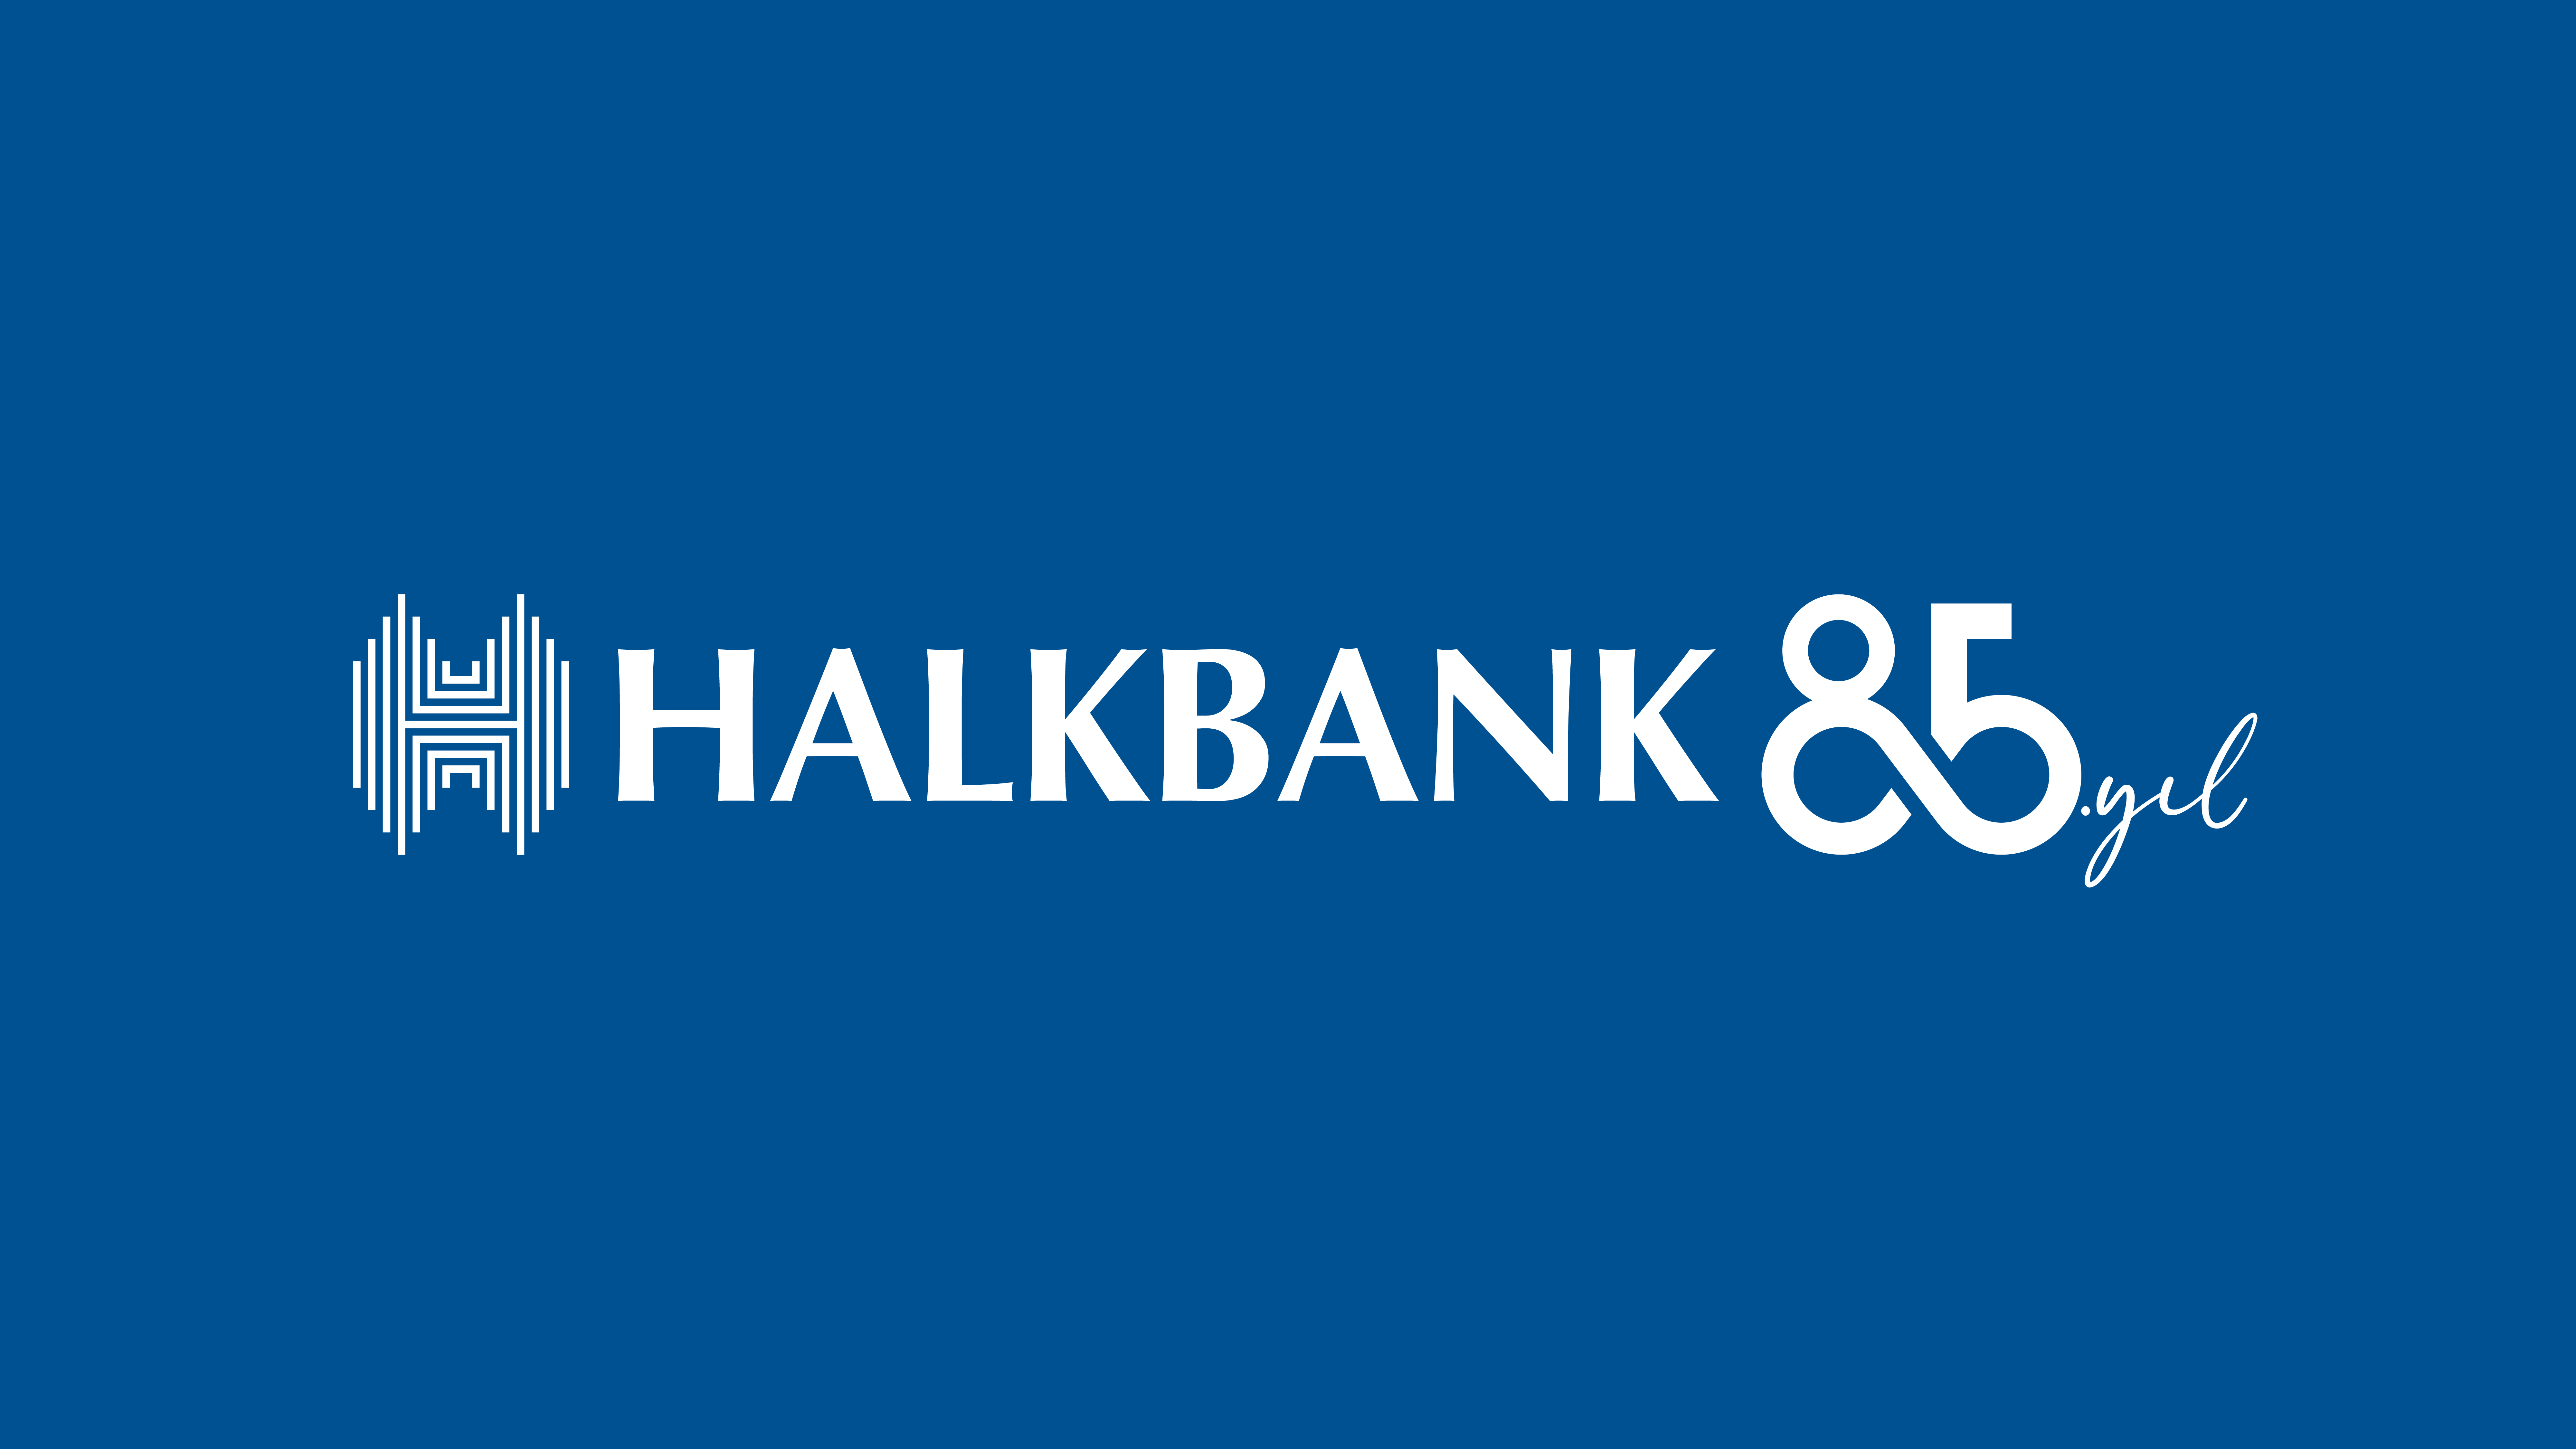 halkbank-85yil-logo-disi-kullanim.jpg